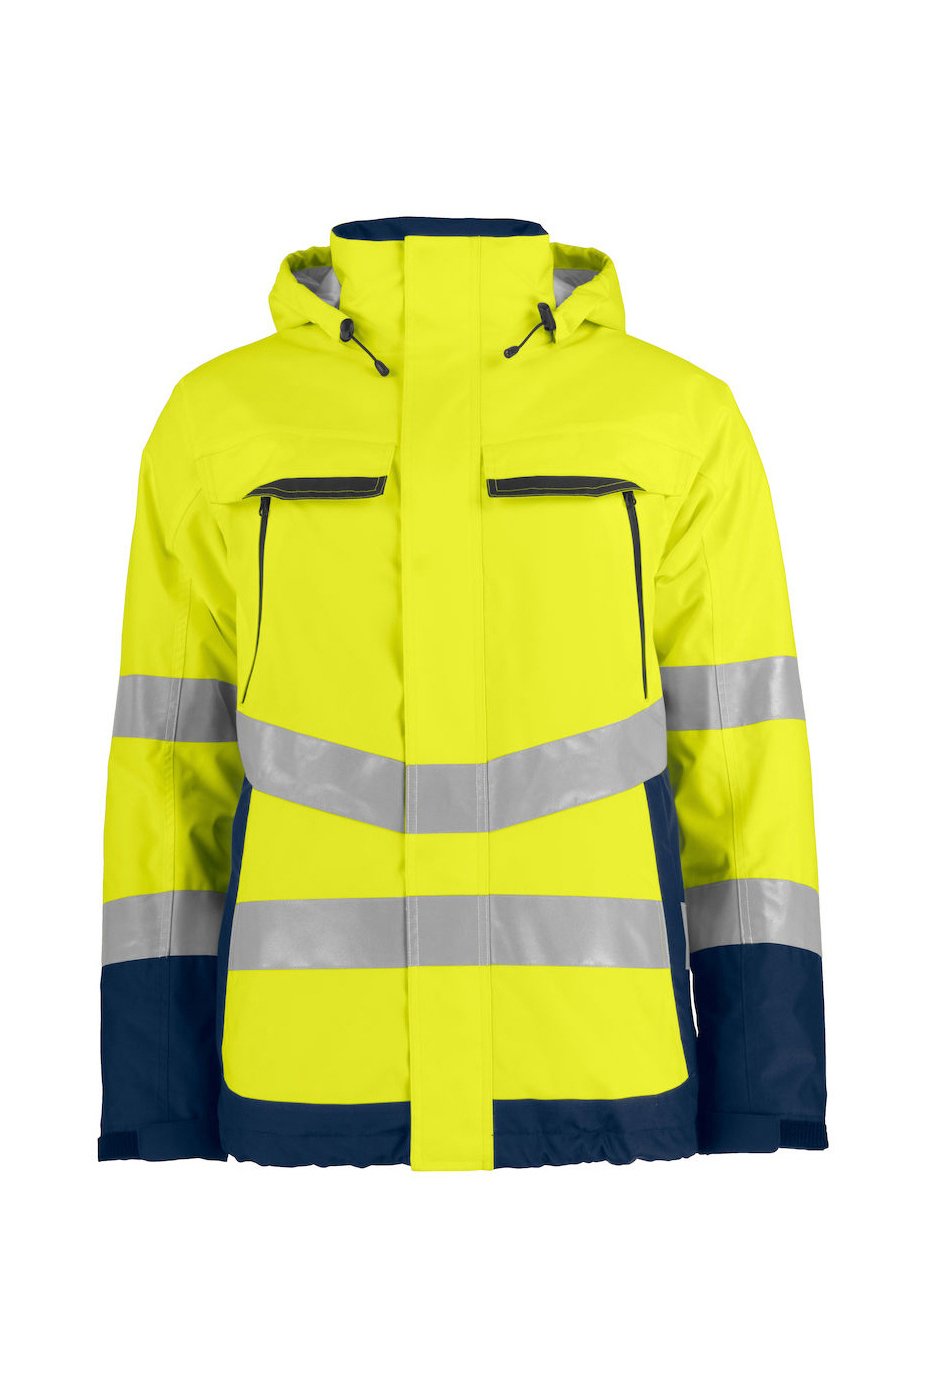 Gefütterte wind- und wasserdichte Warnschutz-Jacke EN ISO 20471 Klasse 3, ISO 343, gelb/marineblau